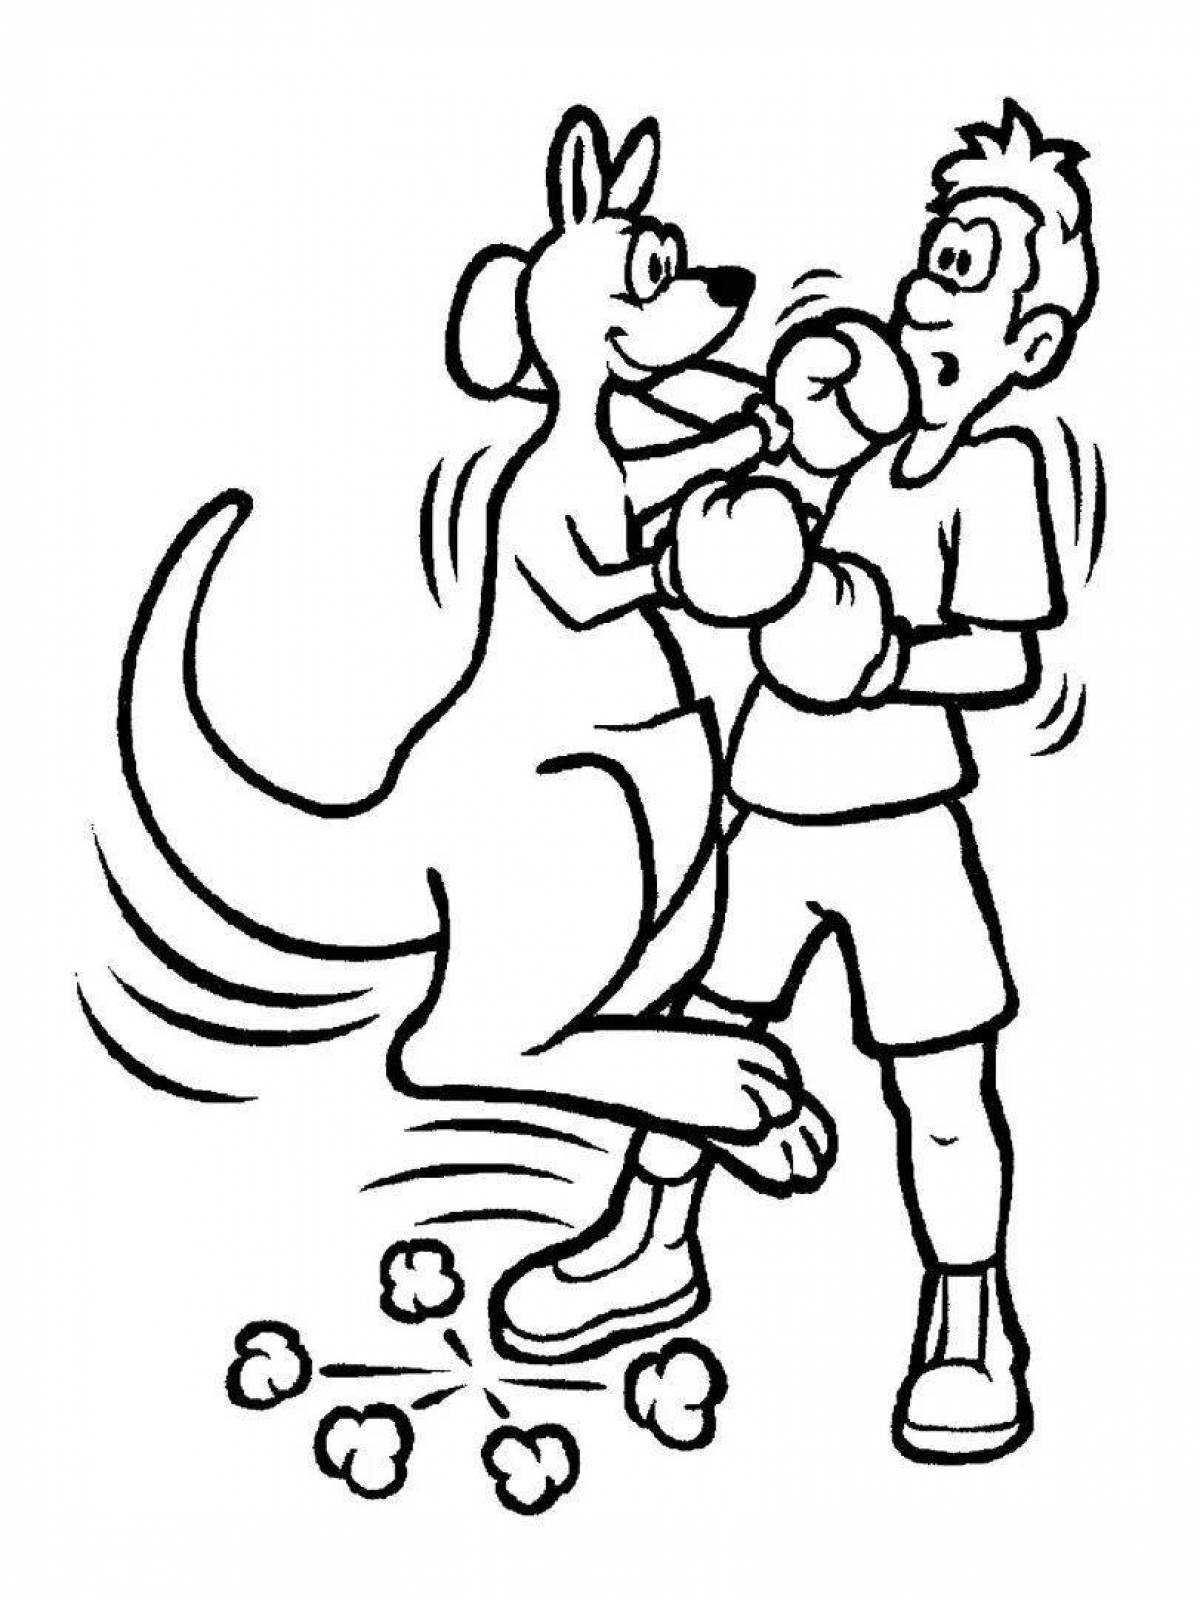 Развлекательная раскраска бокса для детей